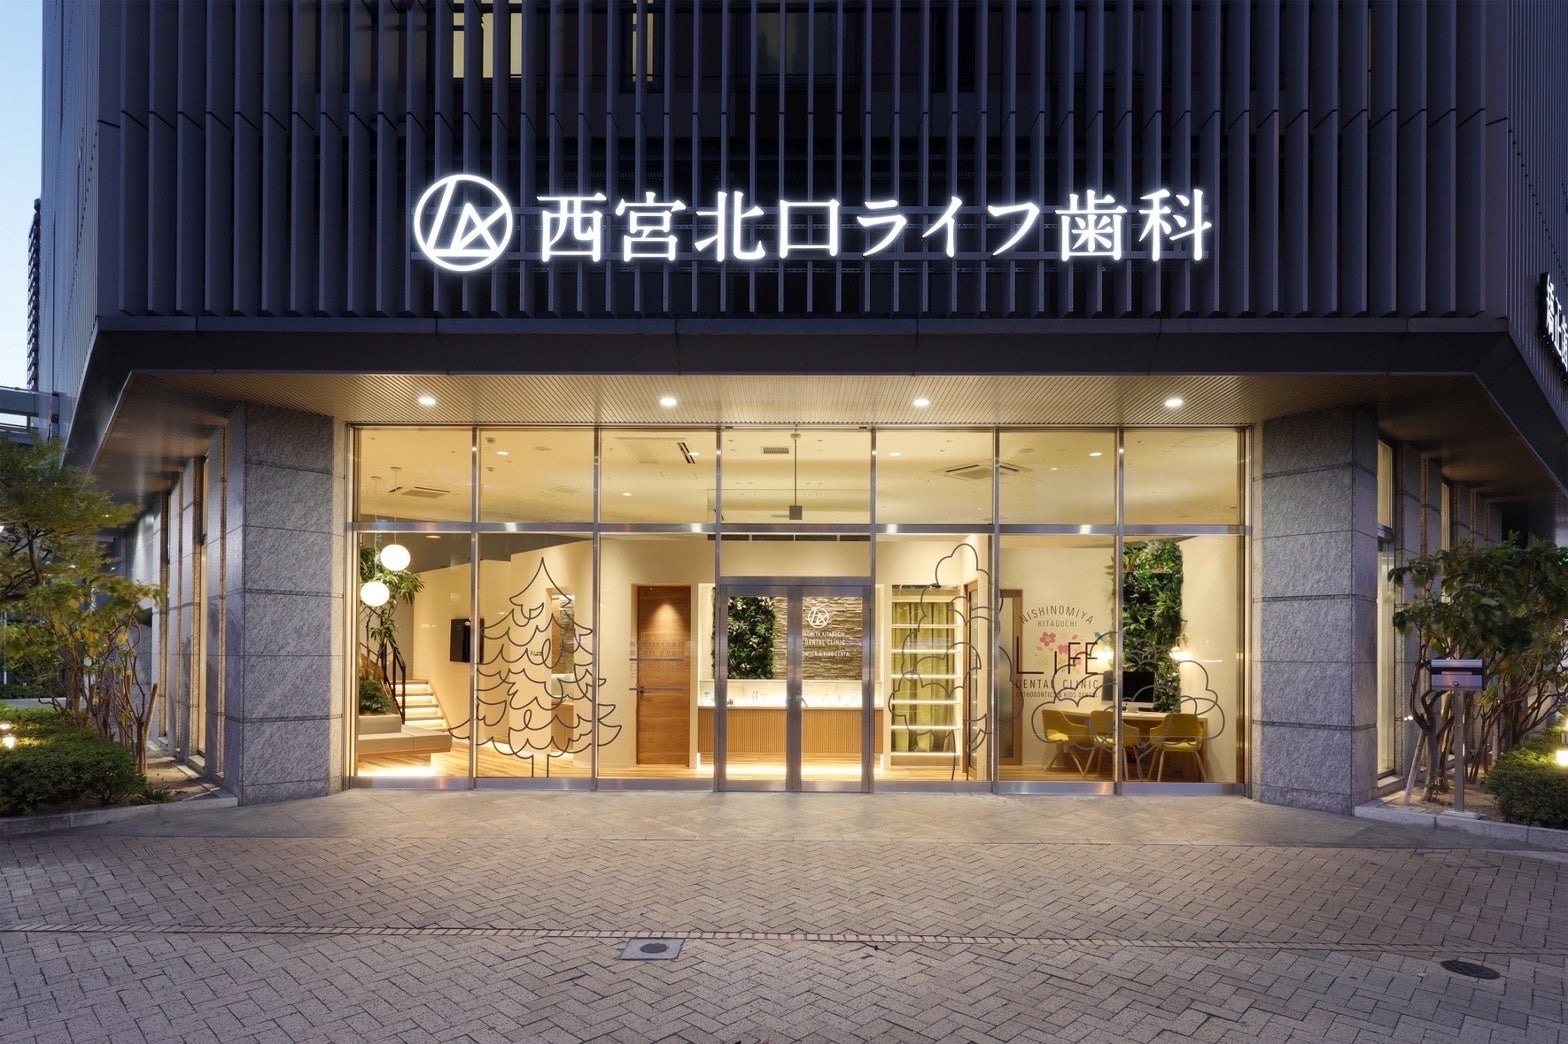 世界55か国で販売されるヨガブランド”Yoga Design Lab”（ヨガデザインラボ）の日本総代理店の権利を取得し、販売を開始しました。